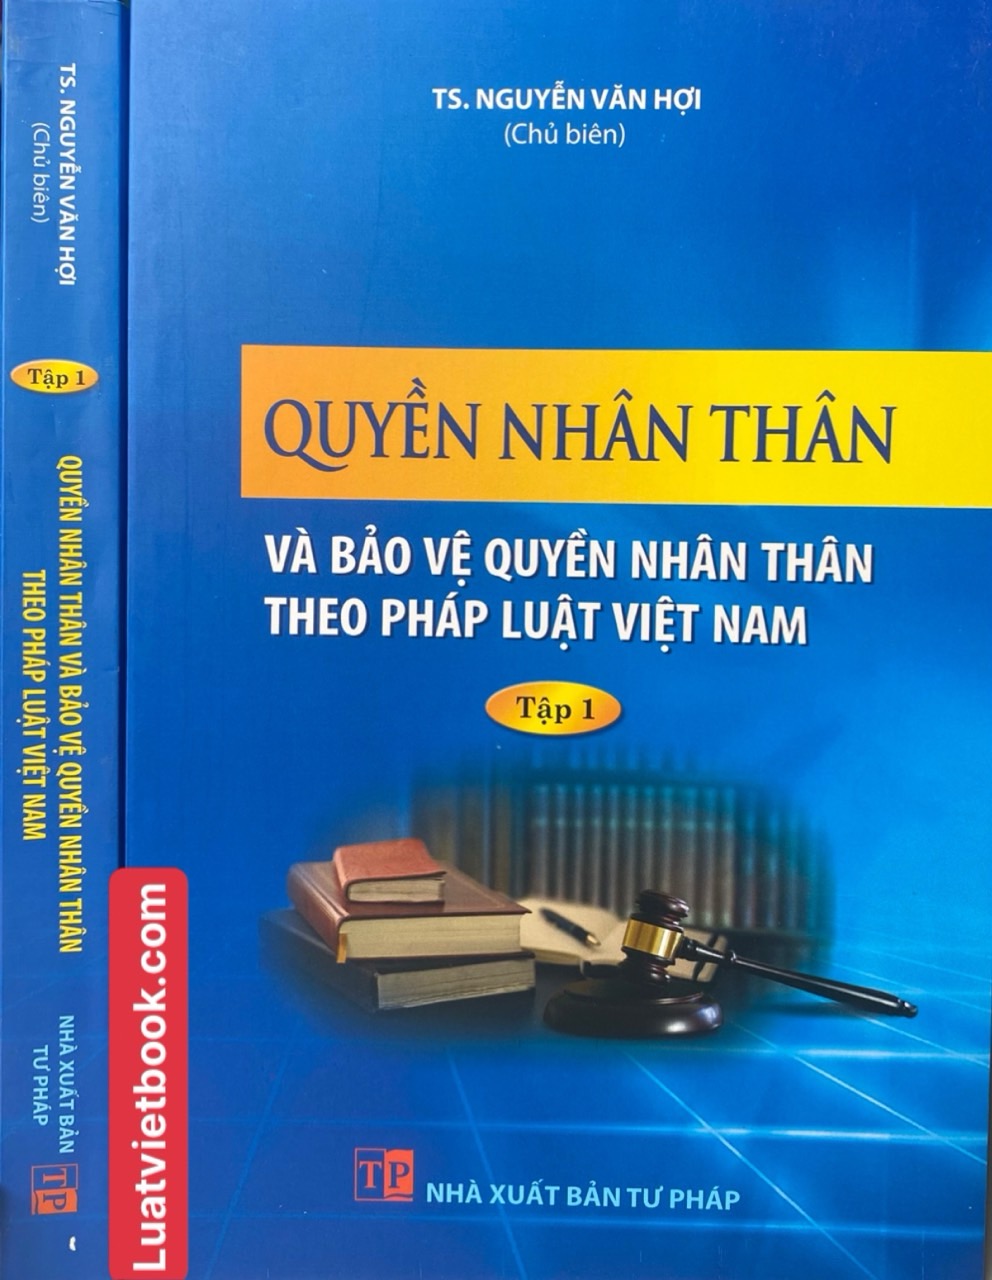 Quyền nhân thân và bảo vệ quyền nhân thân theo pháp luật Việt Nam -Tập 1